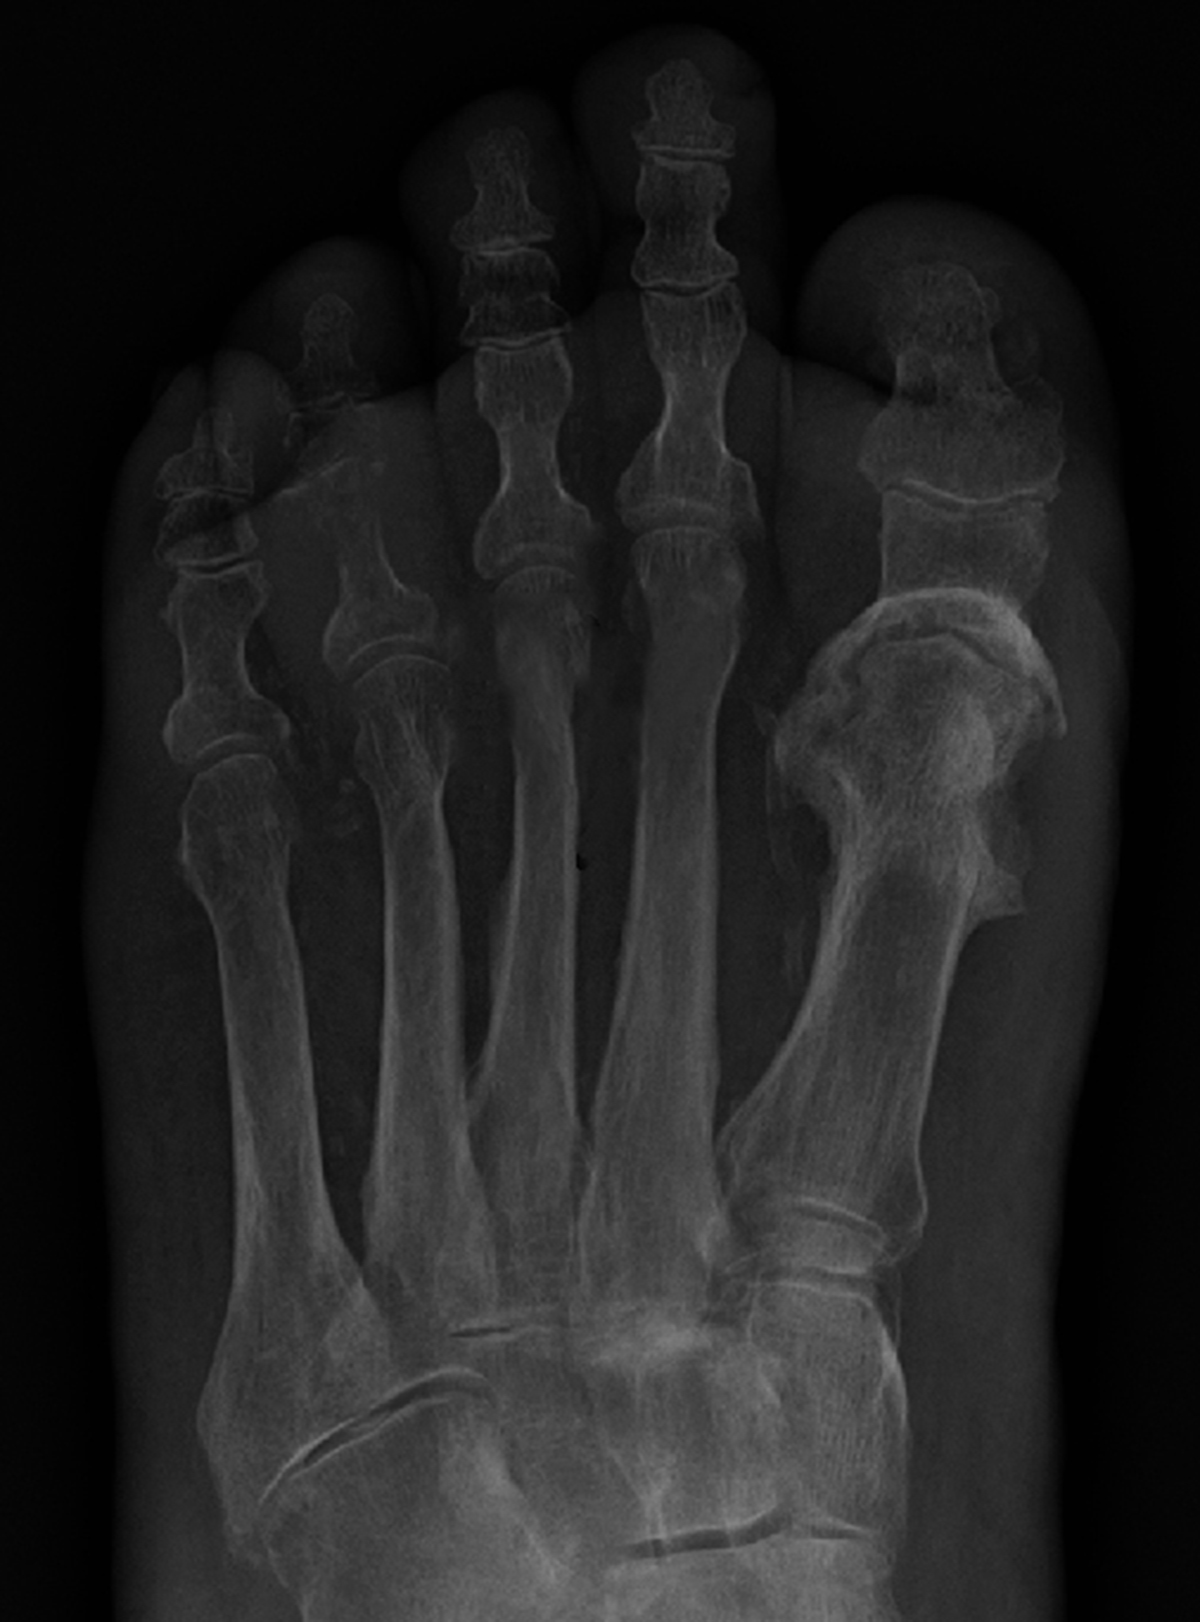 osteomyelitis bone infection arthritis septic toe disease symptoms vs specific